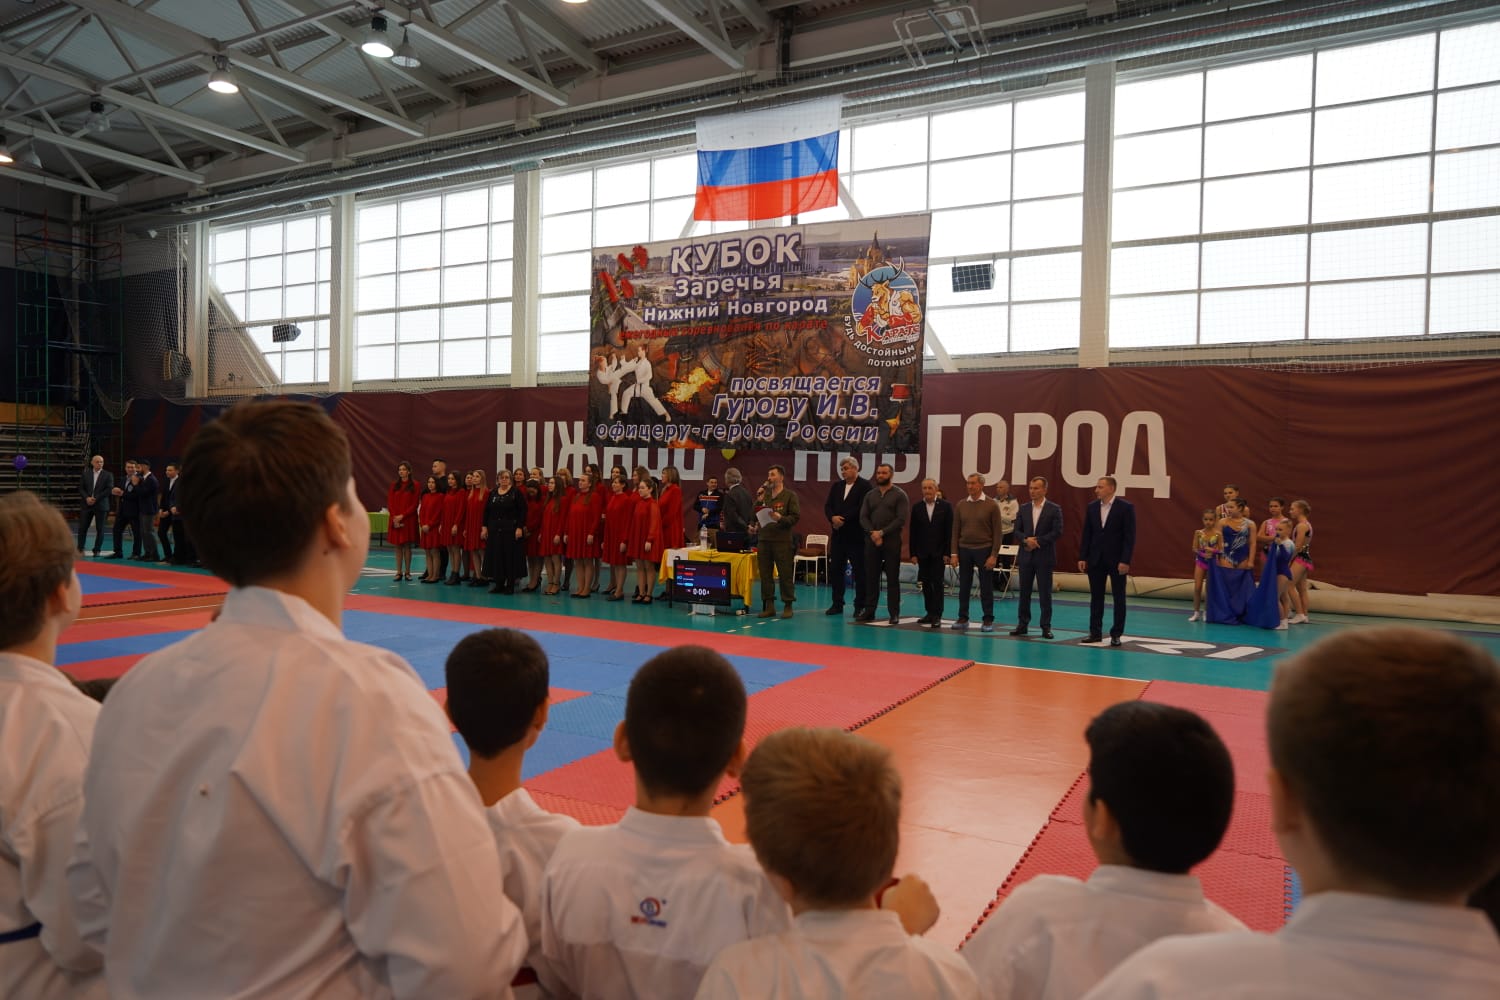 Общественная палата города Нижнего Новгорода провела спортивный турнир по каратэ «Краповик»